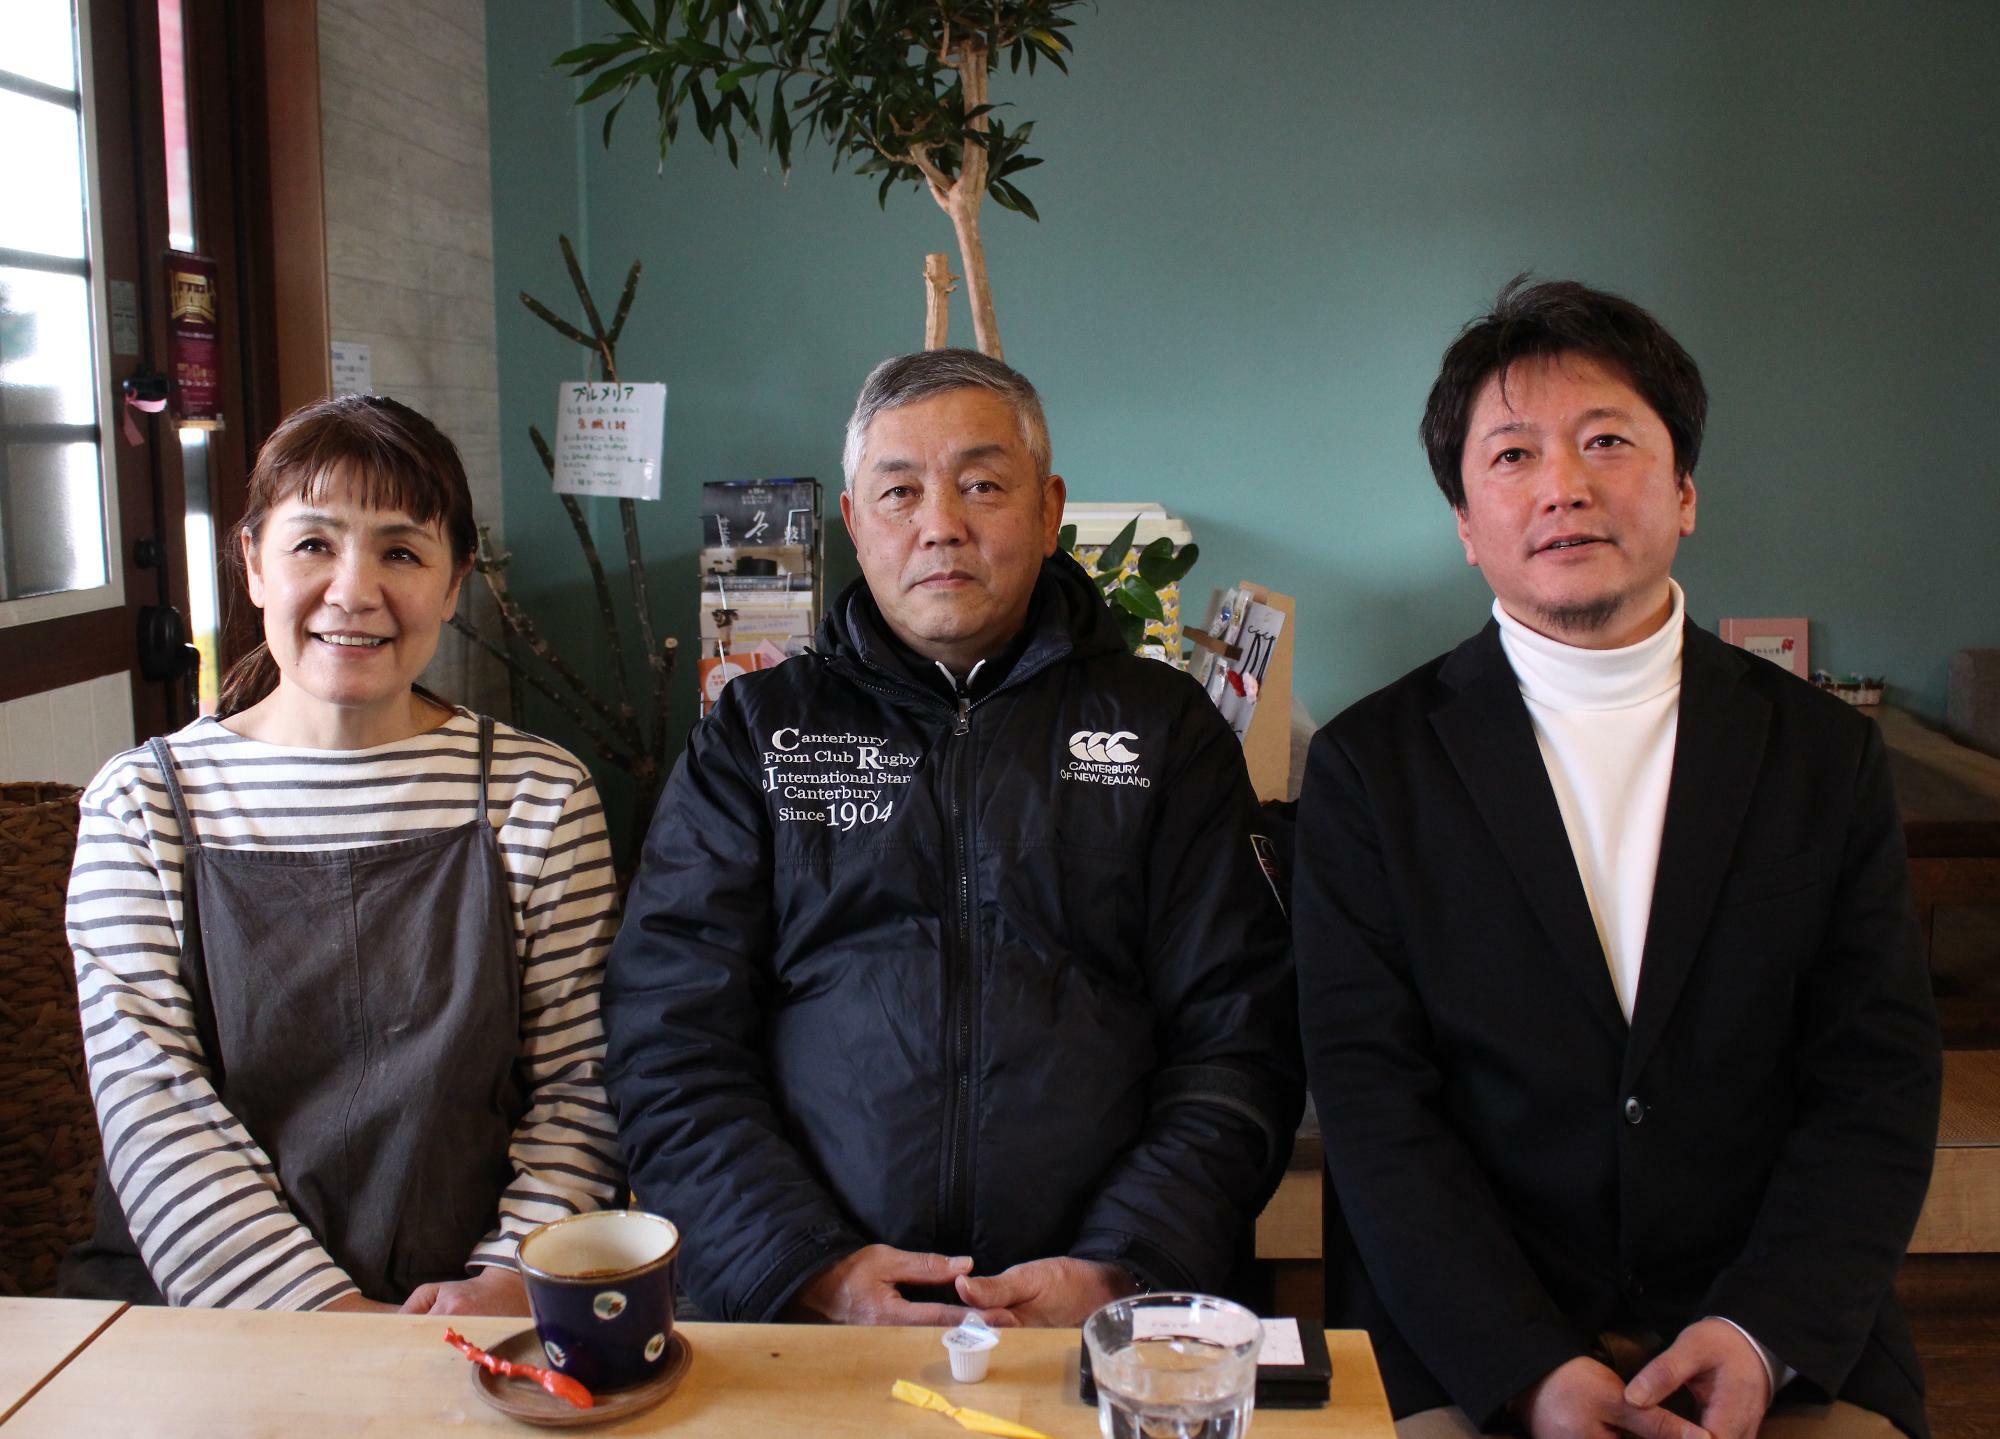 取材に応じて下さった交野市商業連合会の皆さん。左から山崎歩美副会長、西川登志雄会長、割石充理事。